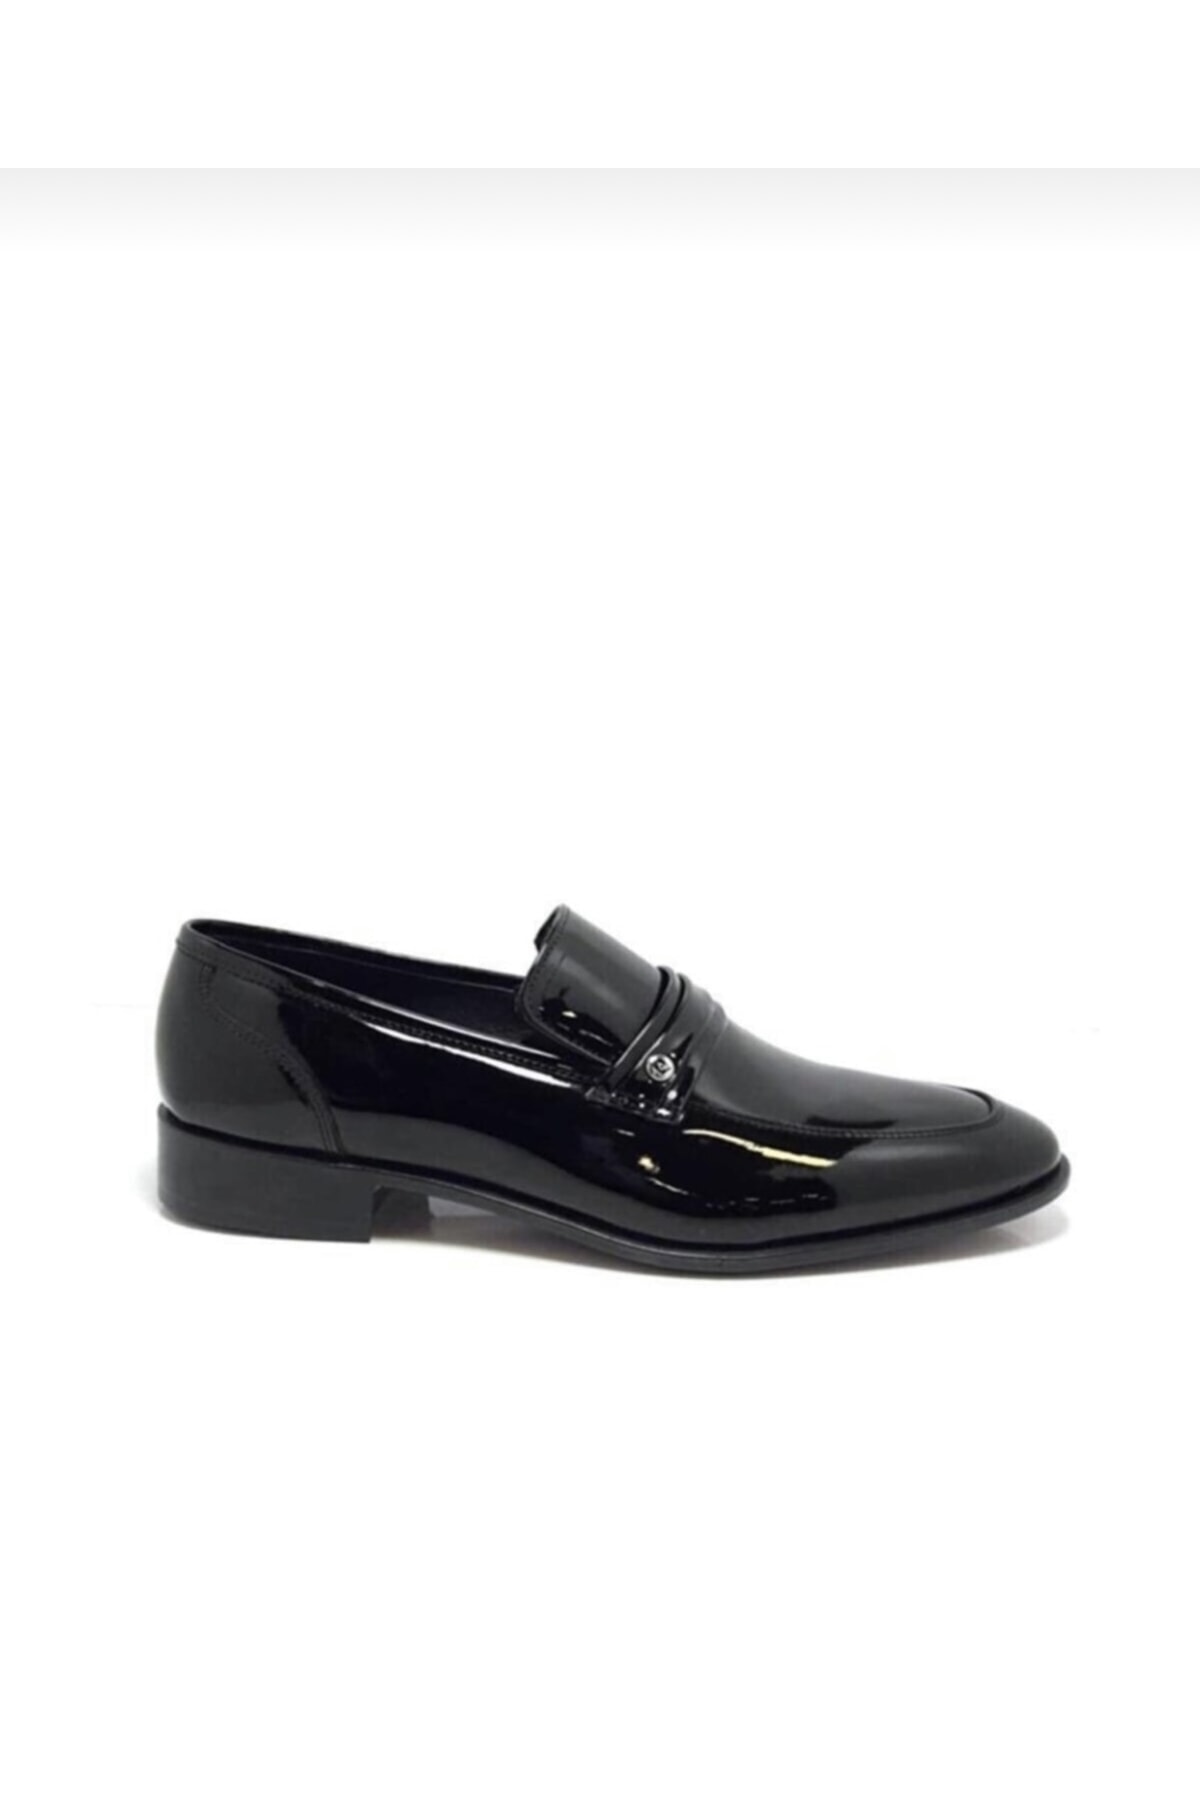 Pierre Cardin 7037 Erkek Siyaj Rugan Bağcıksız Klasik Ayakkabı